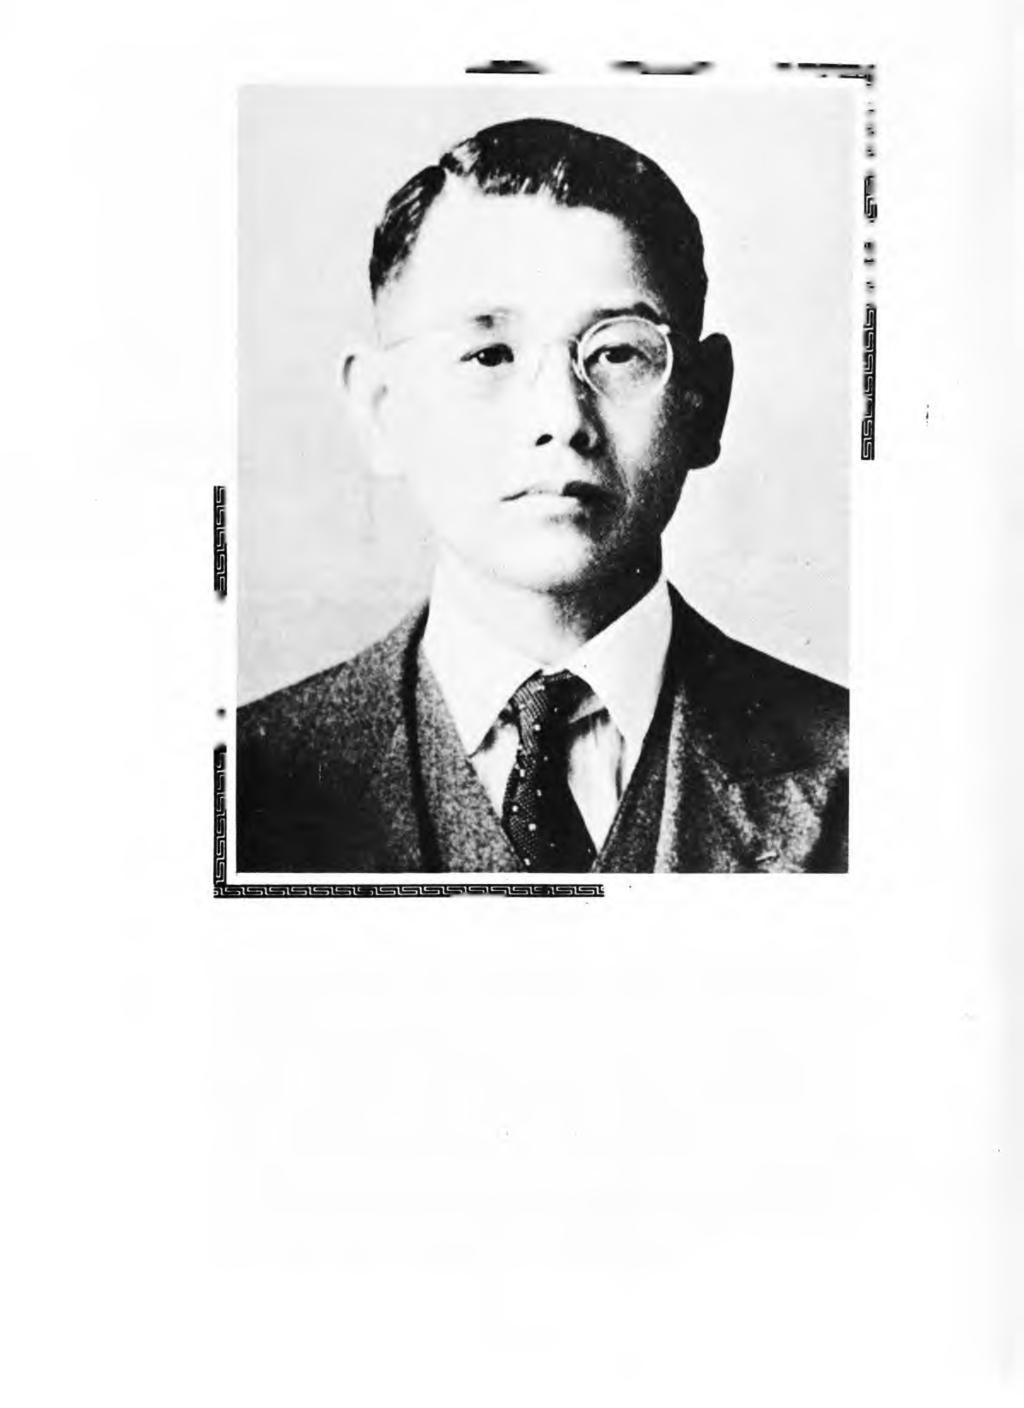 sas=,\=iva atsiabaim U Itll=tt=il=,l==il==, =al==.m TOICHI EKI Deceased Toichi Eki, founder of T. Eki, Inc.